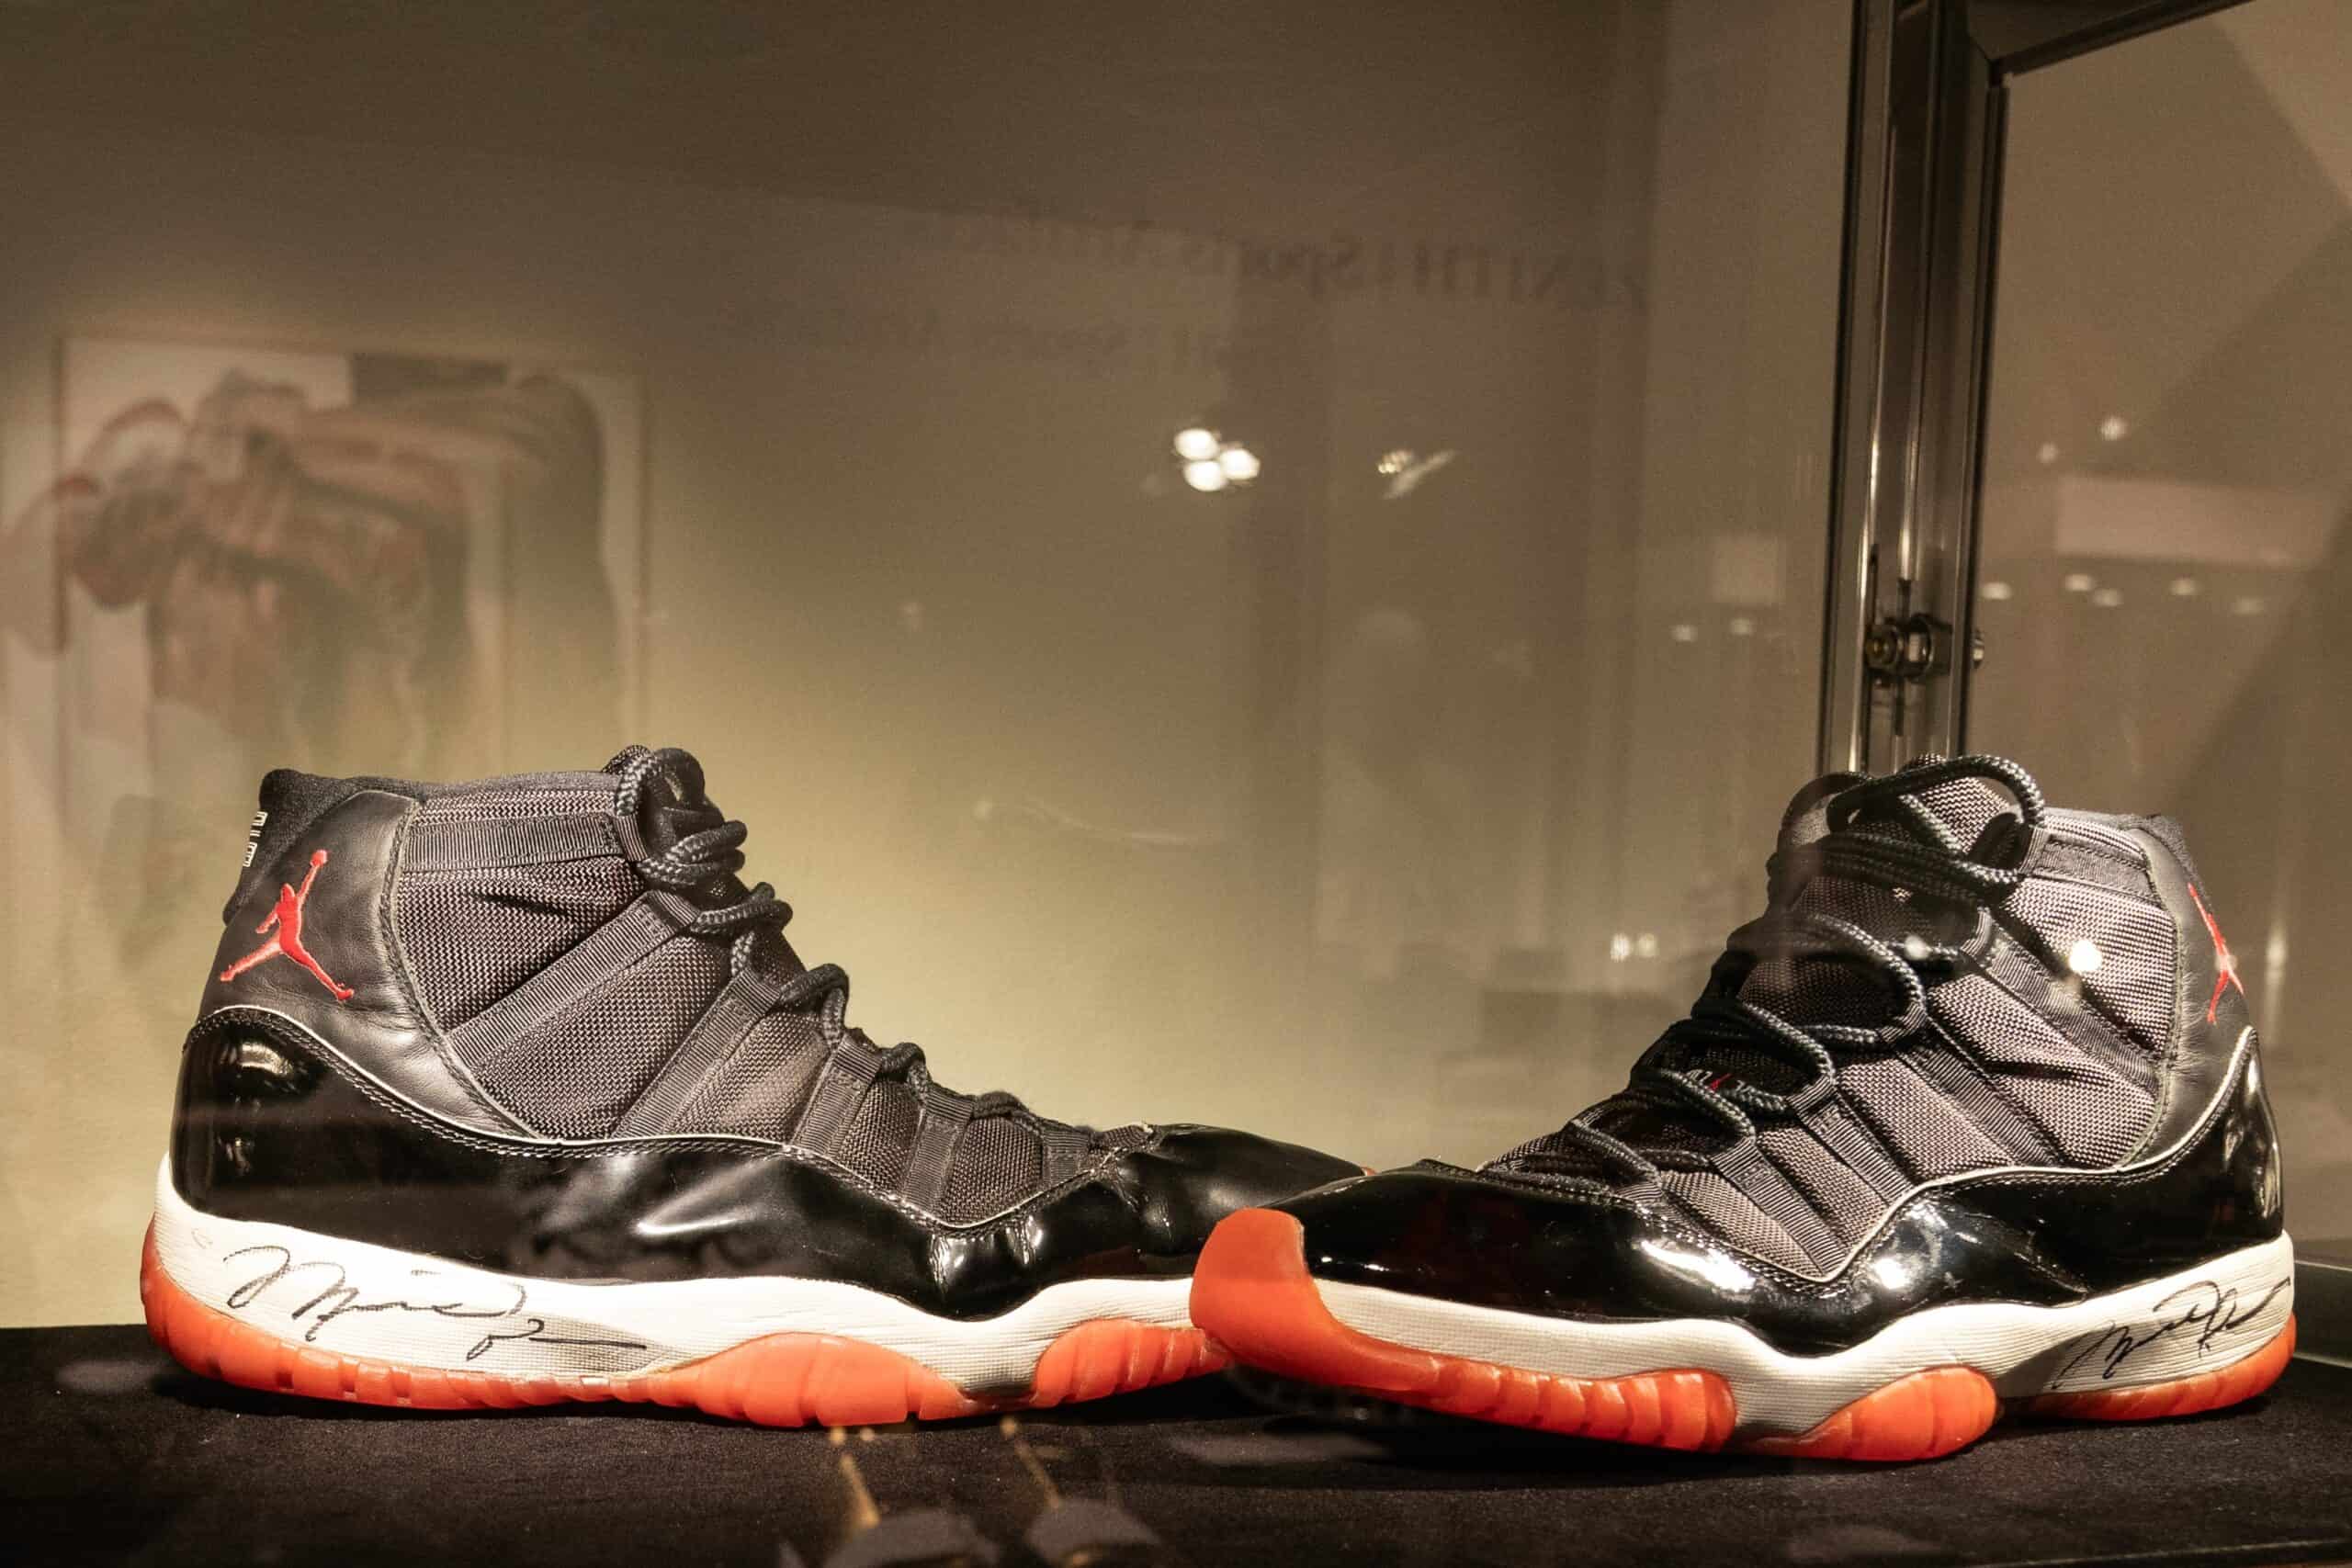 Michael Jordan's Game-Worn Sneakers